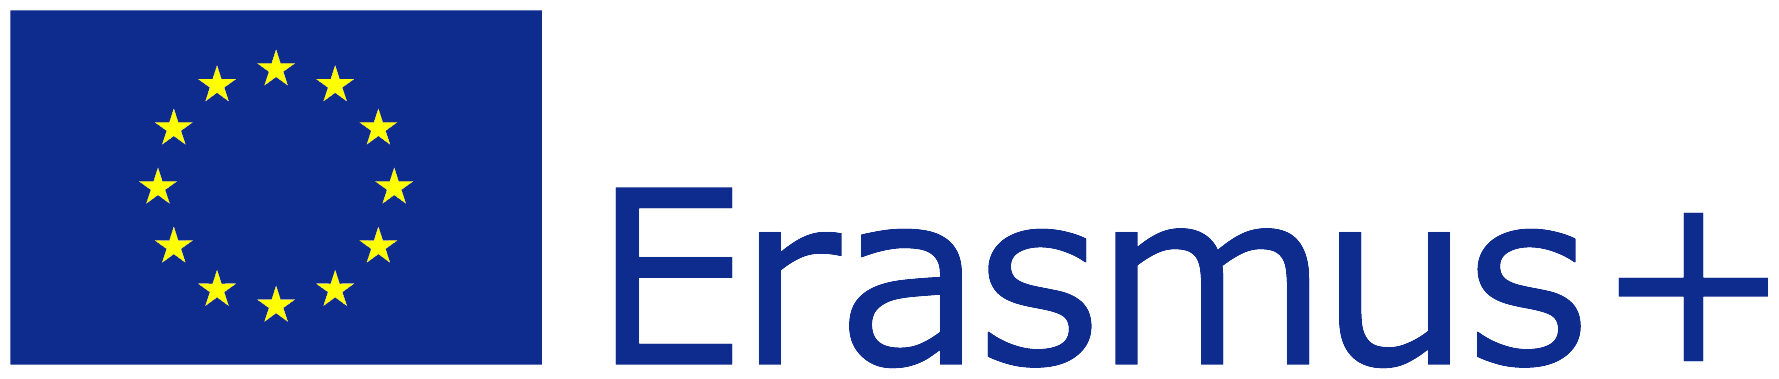 Erasmus-logo-color.png